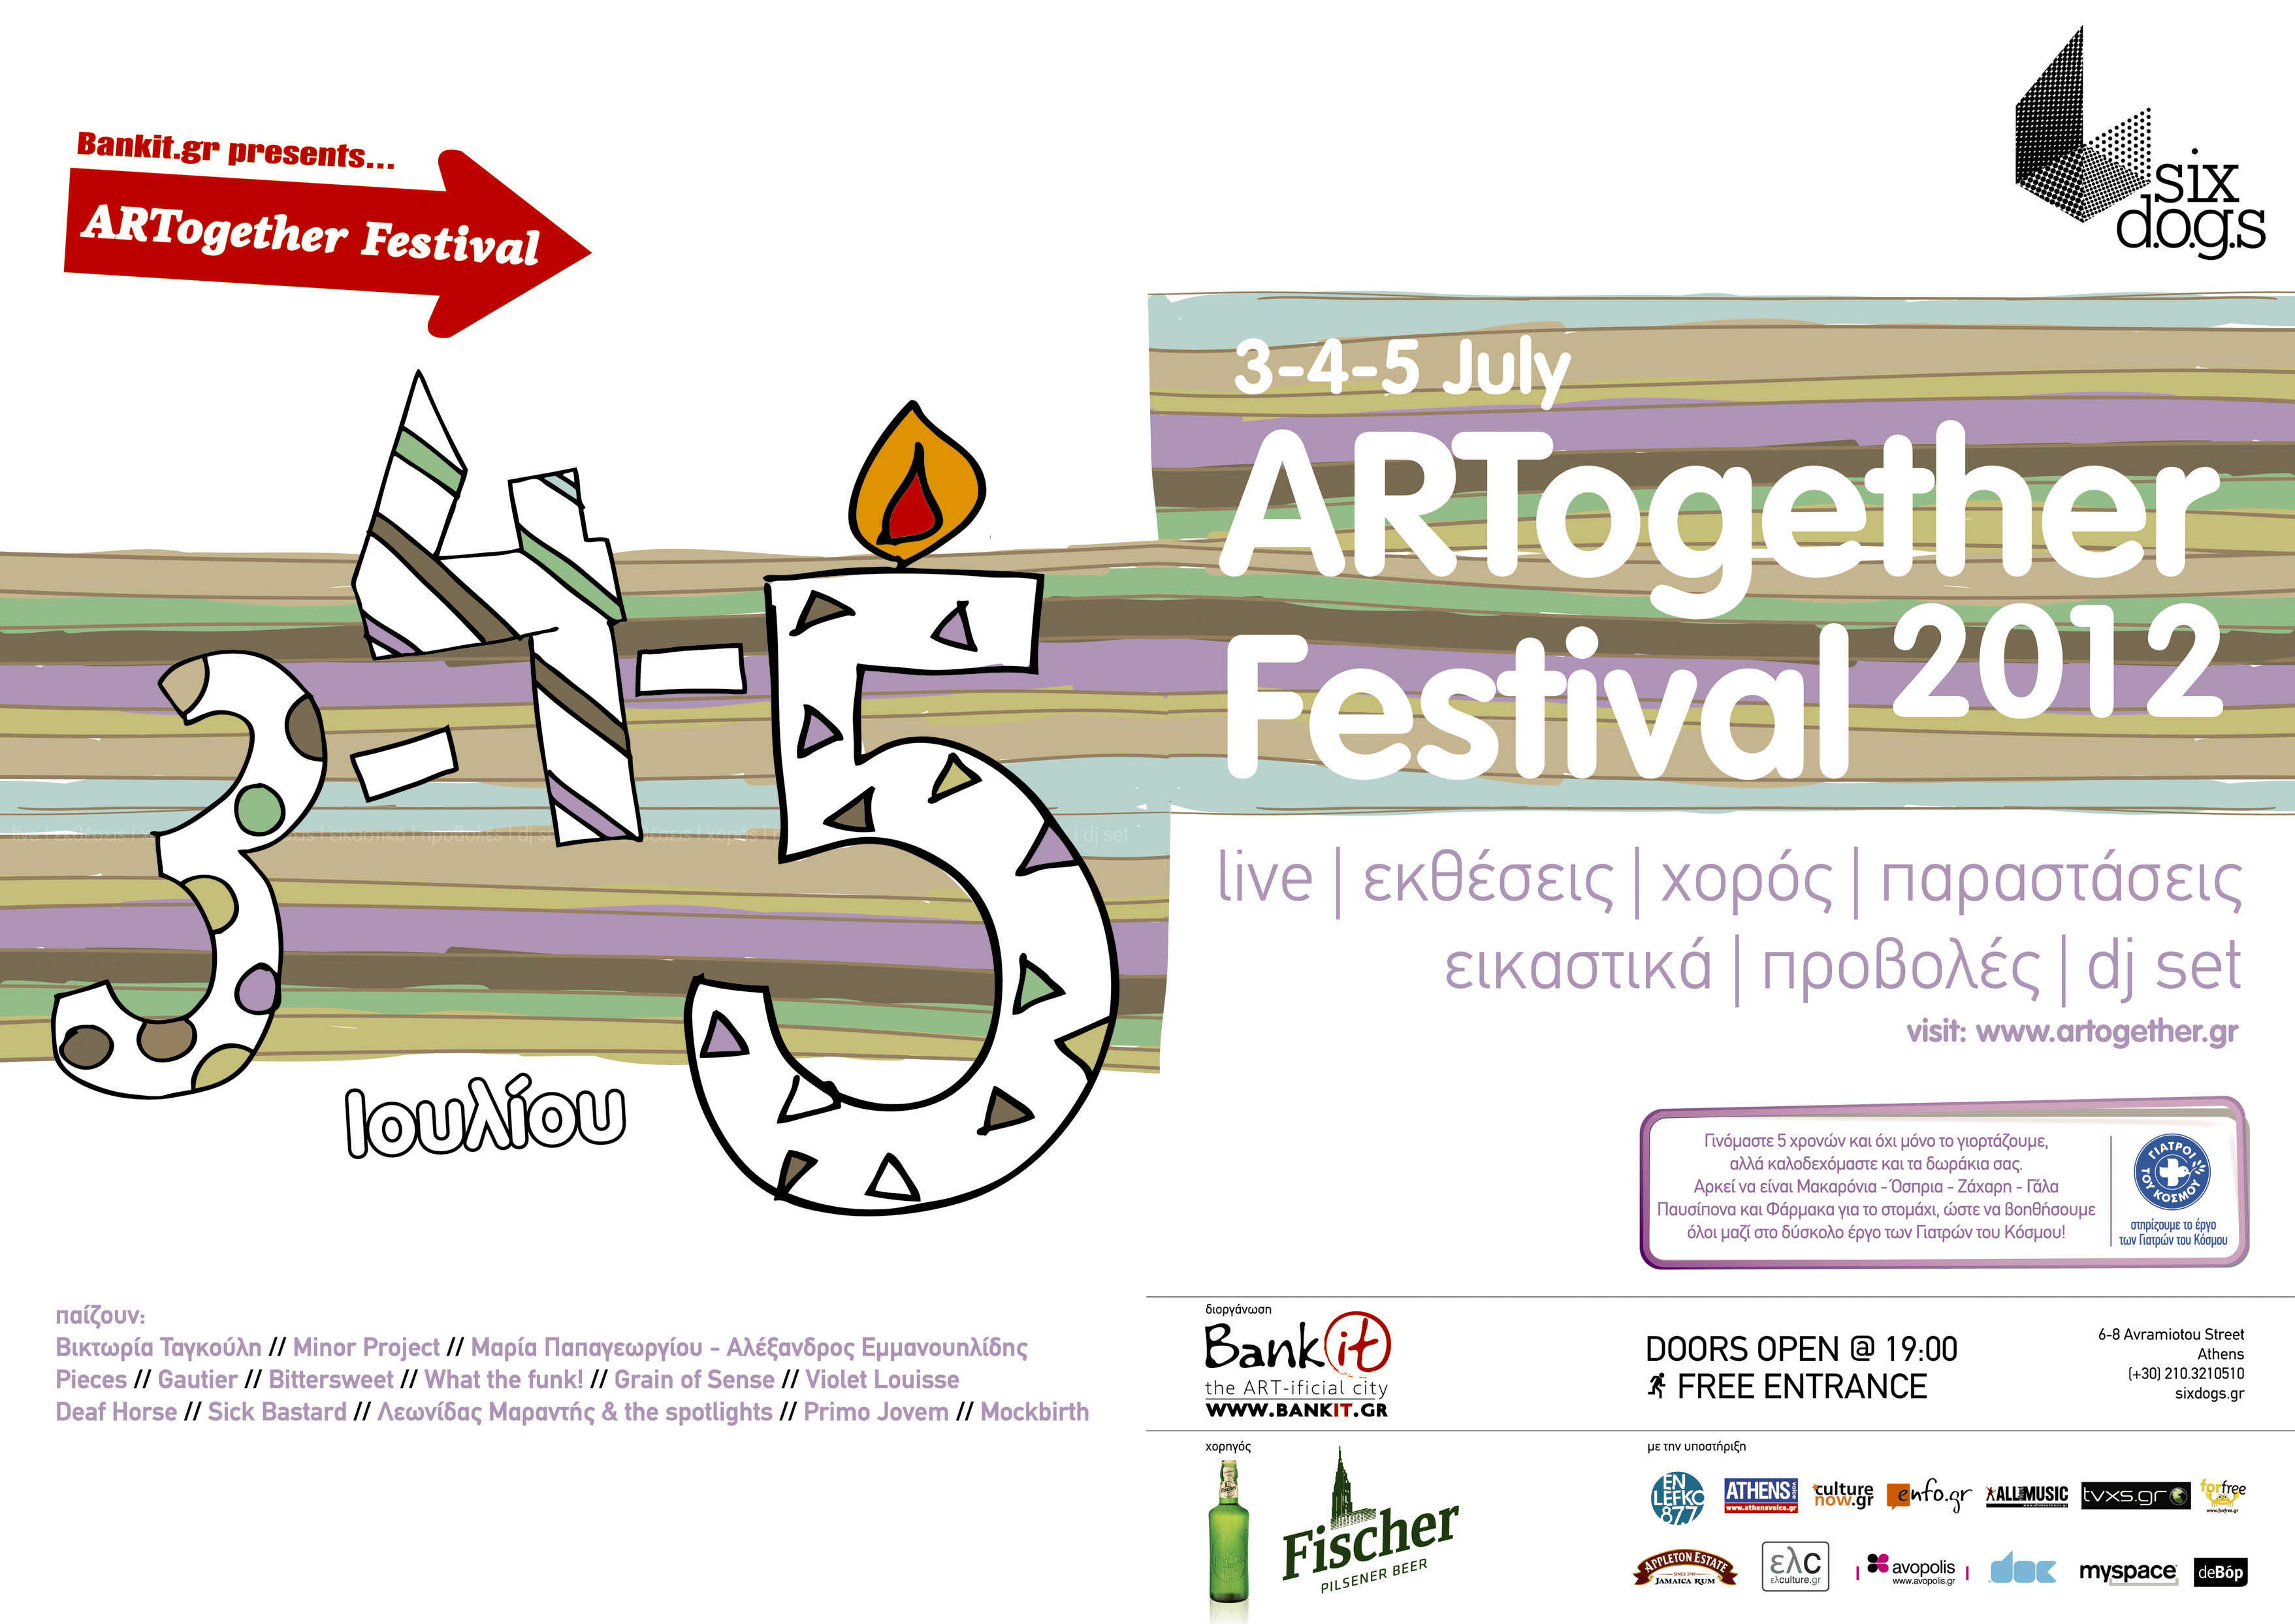 Οι καλλιτέχνες του bankit  σας προσκαλούν στο 5ο ARTogether Festival